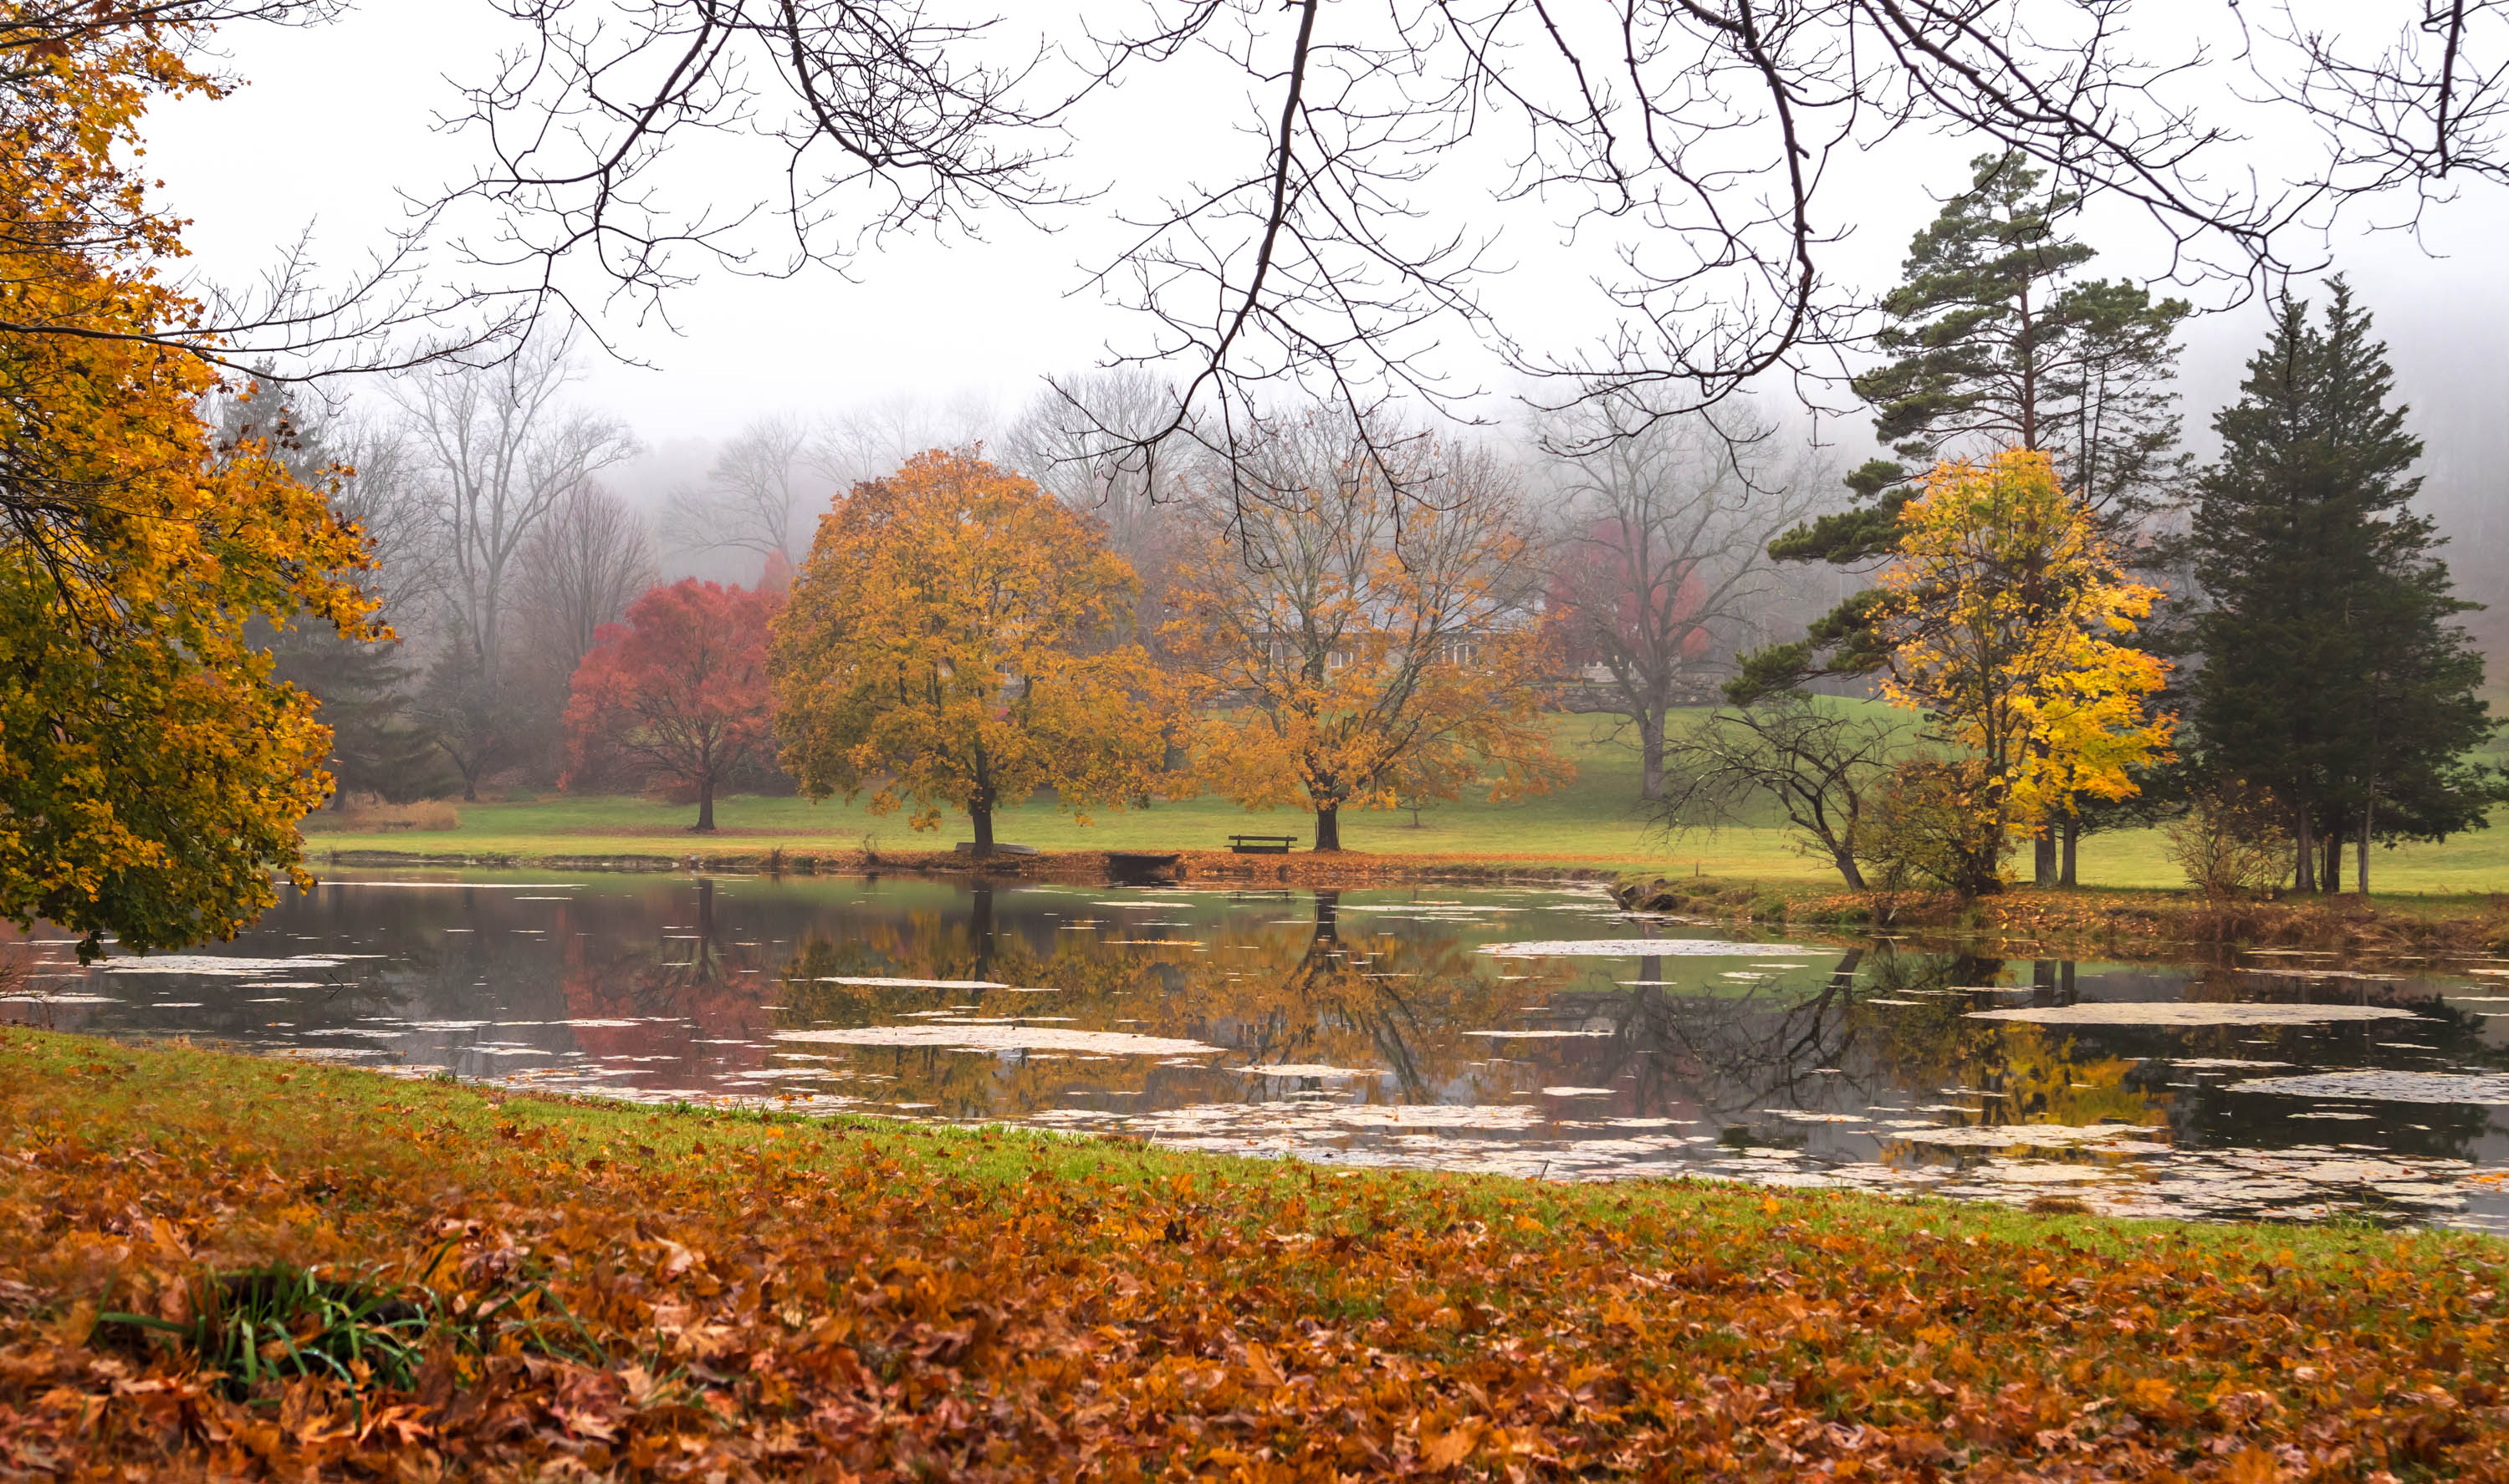 природа,осень,пейзаж,деревья,отражения,озеро,вода,листья,туман,, Антонина Яновска